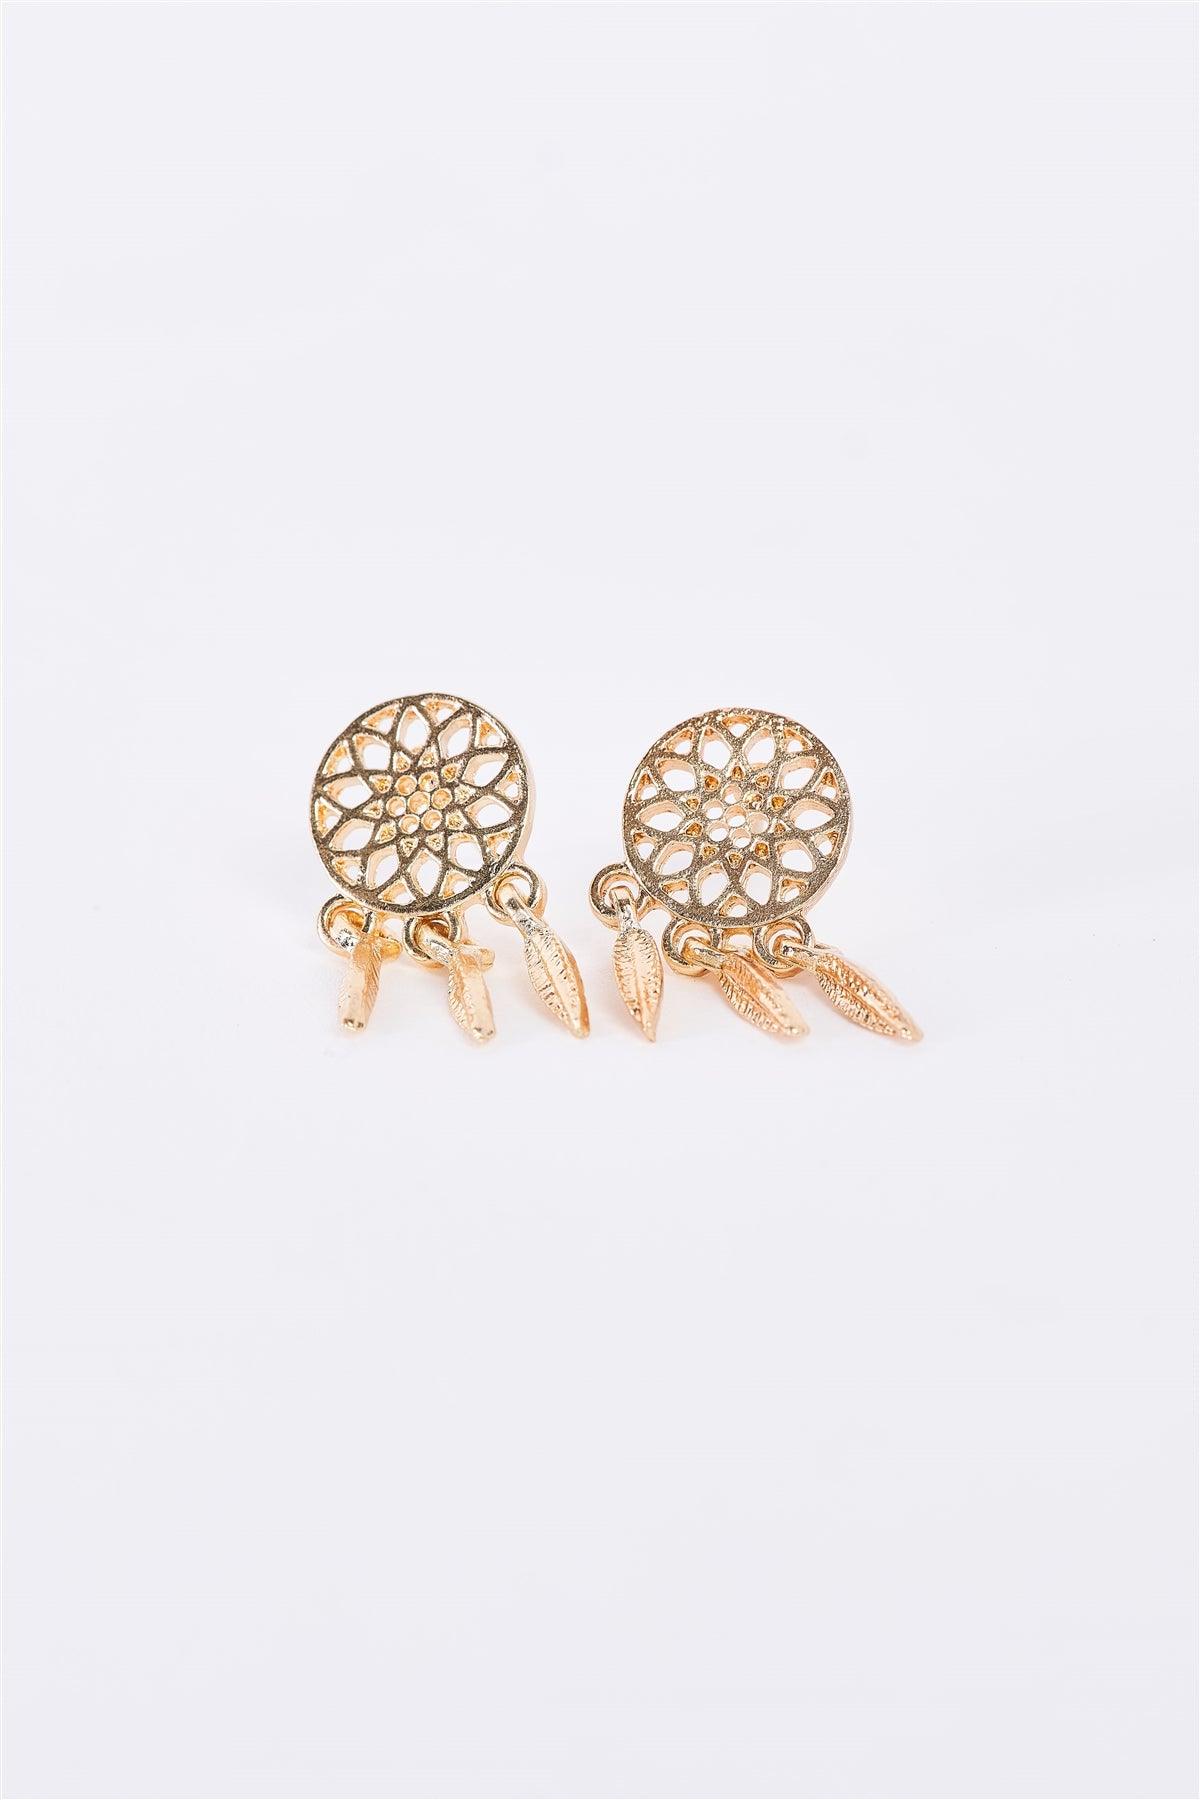 Small Dreamcatcher Gold Stud Dangle Drop Earrings Earrings /3 Pairs